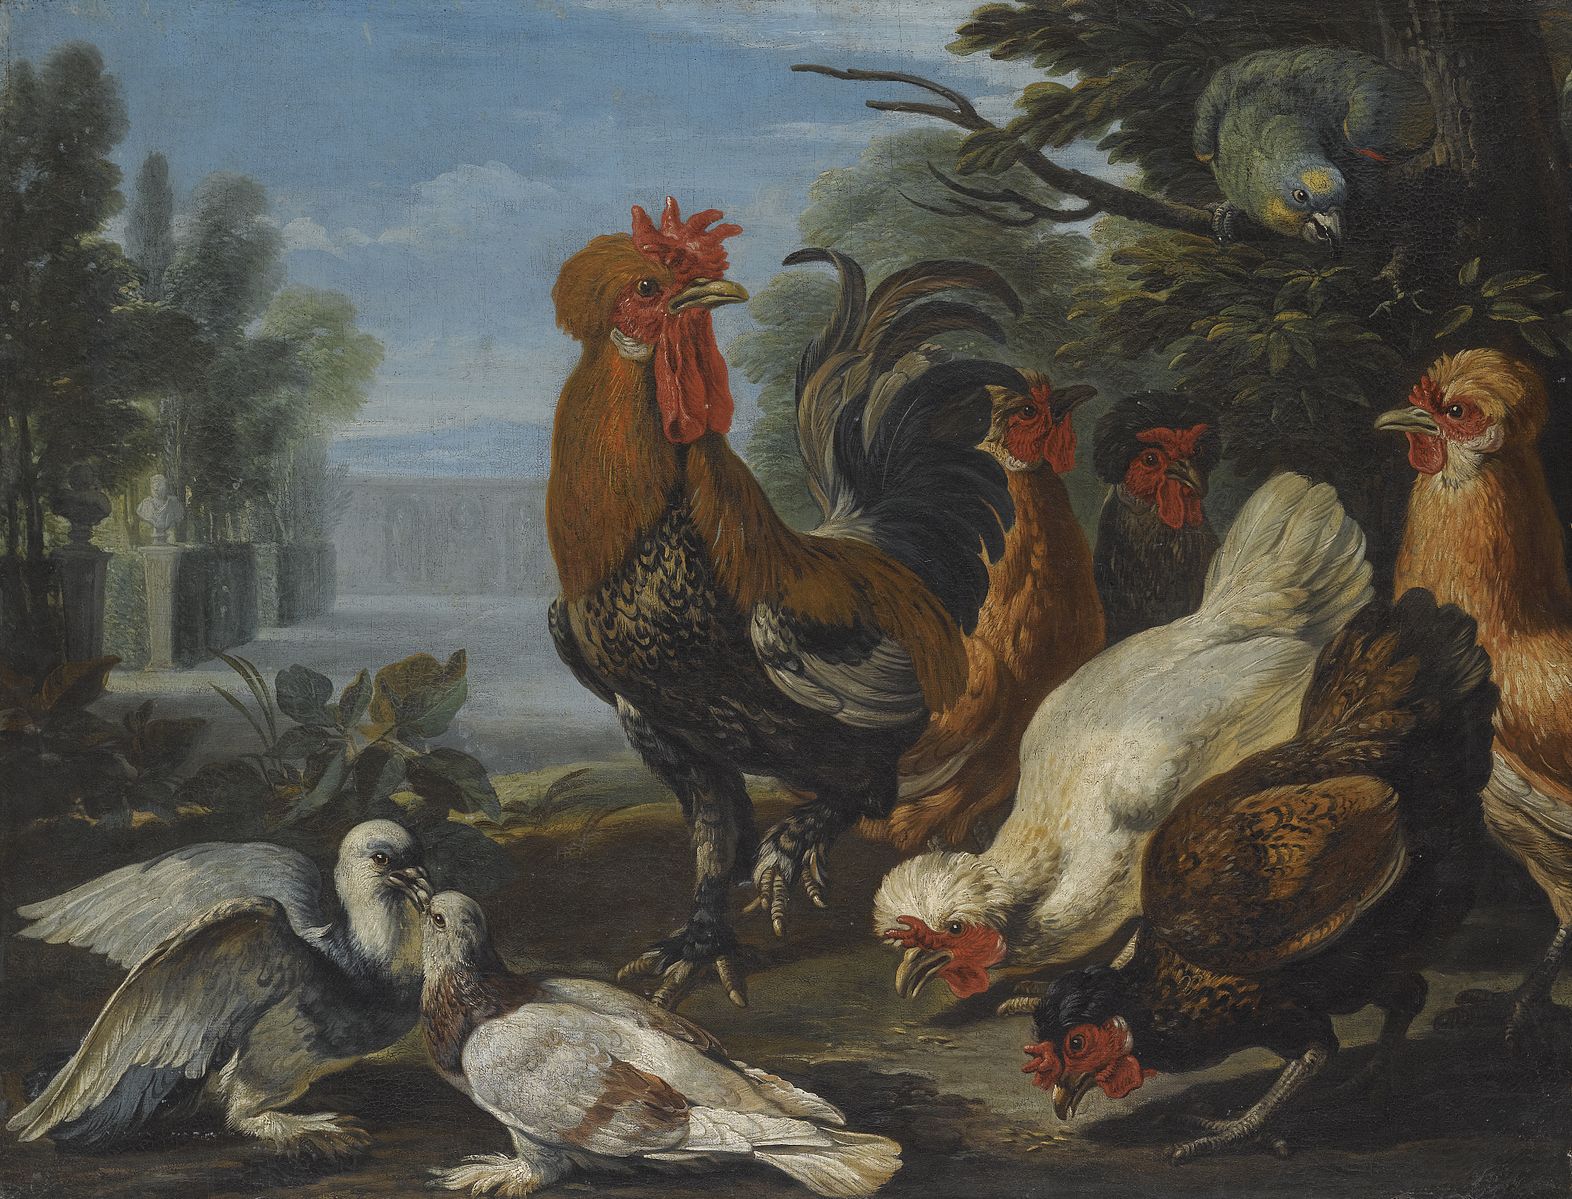 Петух и курица в народном творчестве